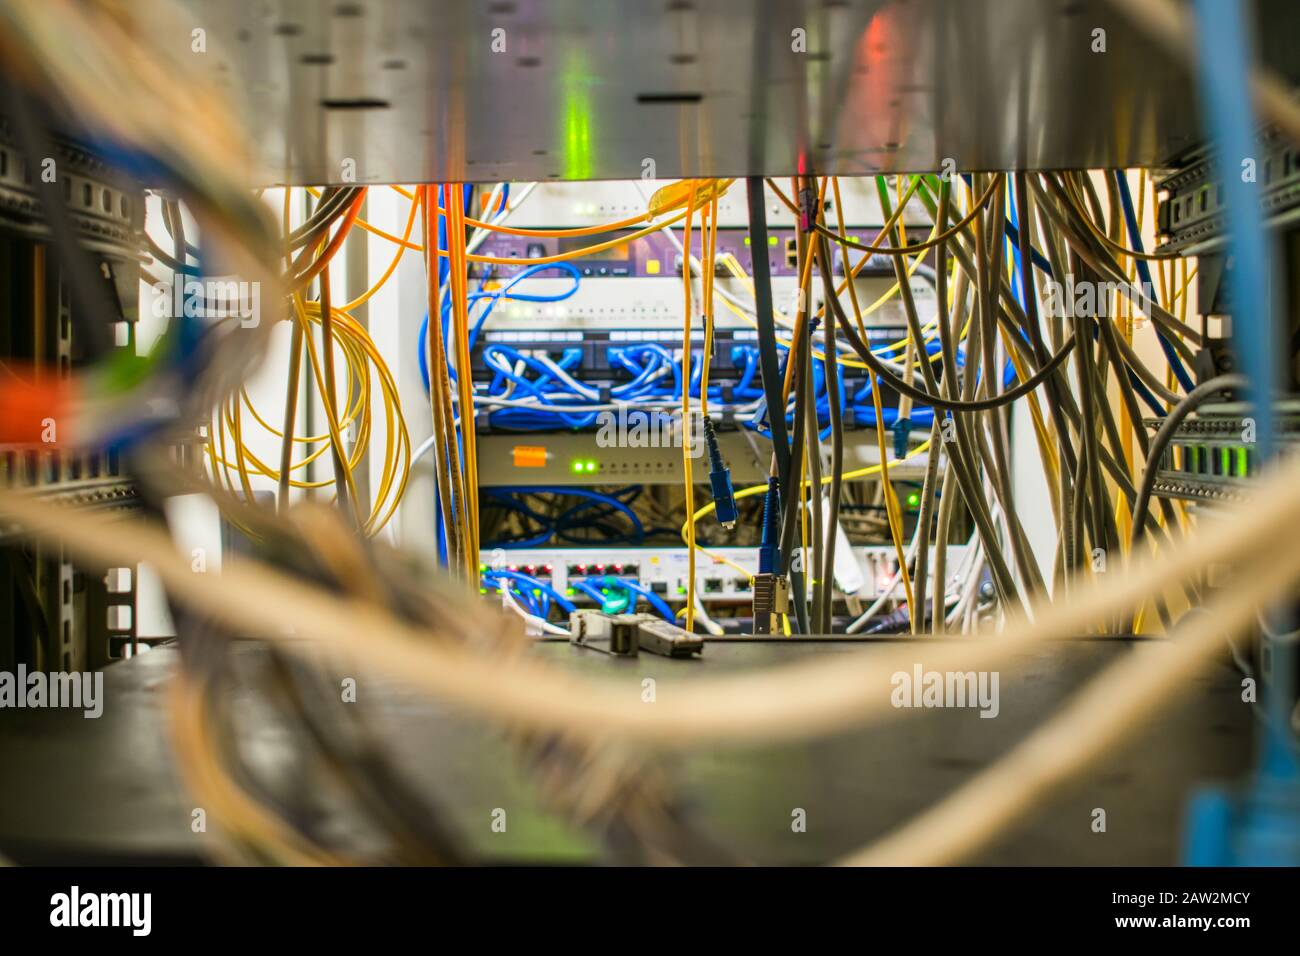 Molti fili sono nel rack con l'apparecchiatura di commutazione del provider Internet. I cavi di comunicazione e i cavi patch in fibra ottica si trovano nella Foto Stock